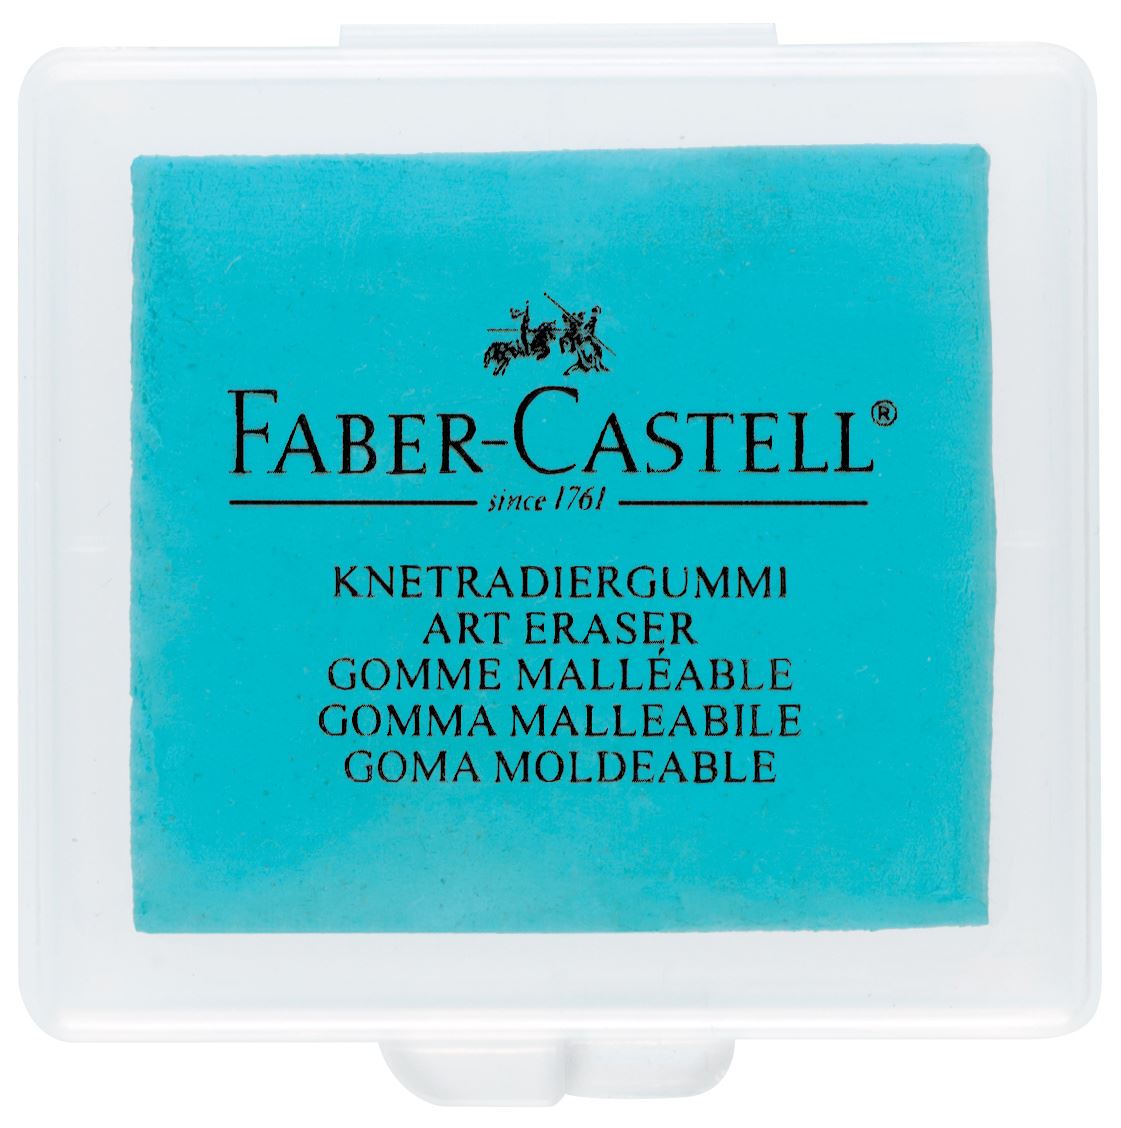 Faber-Castell - Knetradiergummi, türkis, brombeere, blau